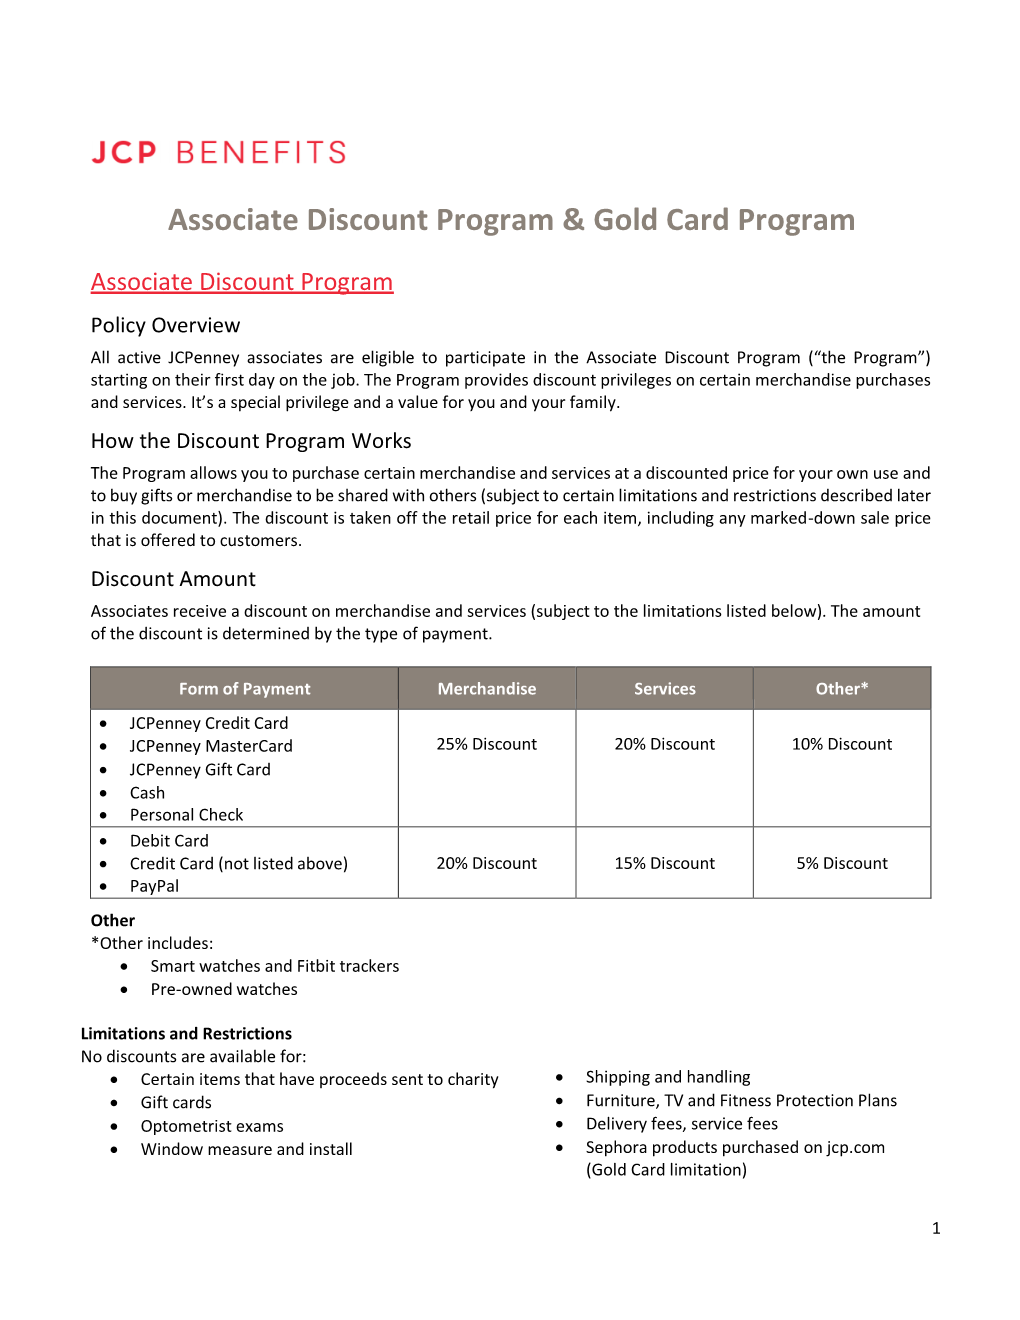 Associate Discount Program & Gold Card Program